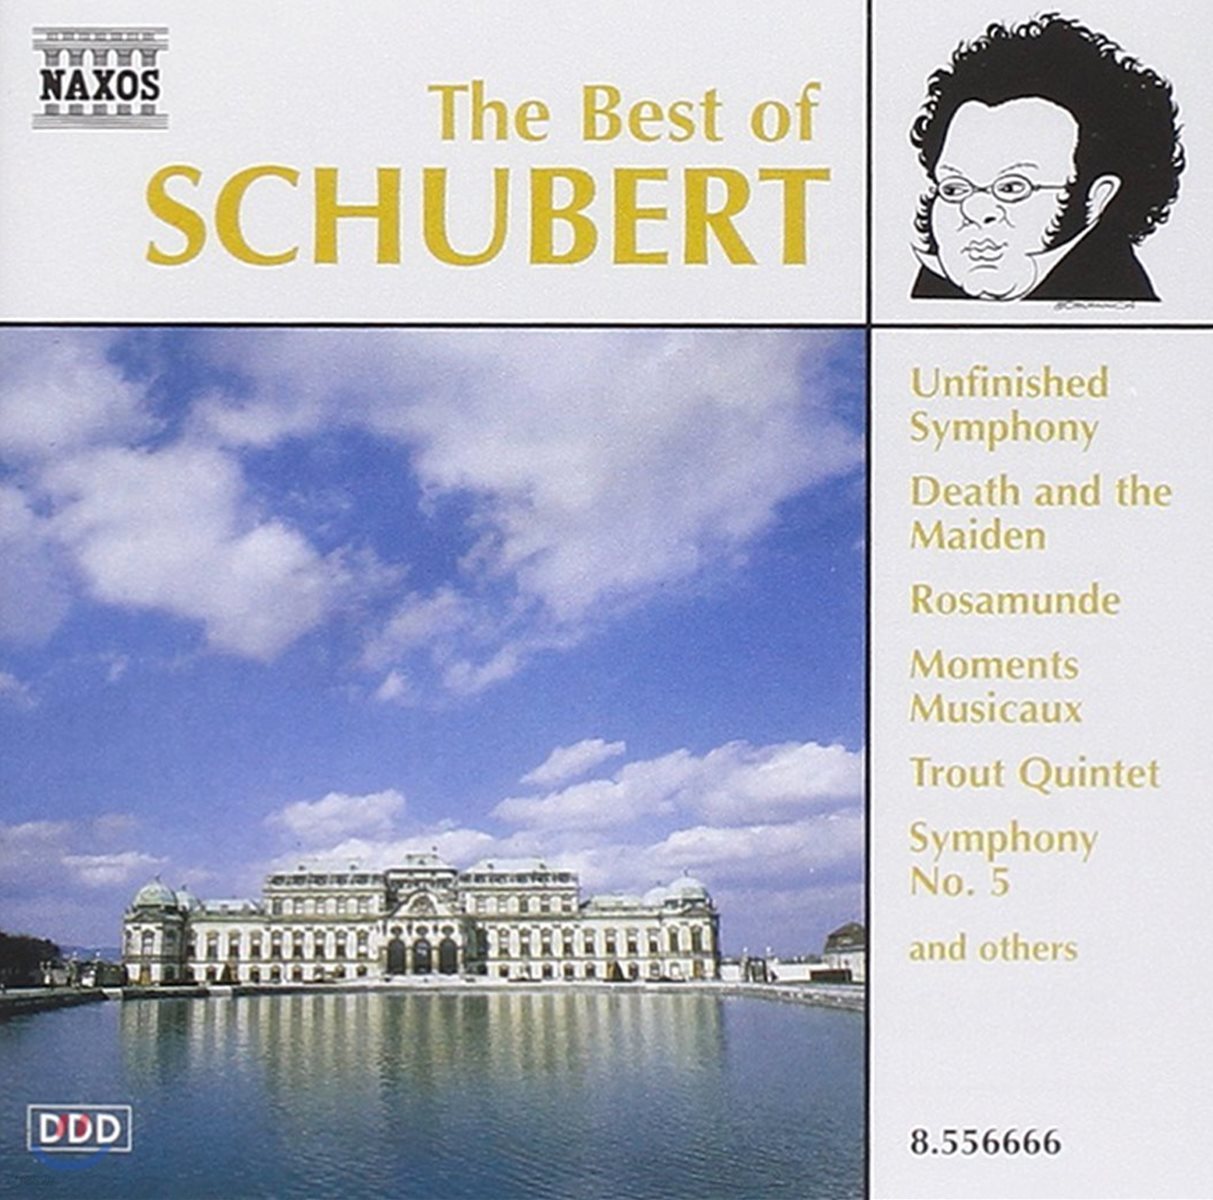 슈베르트 명곡집 (The Best Of Schubert)